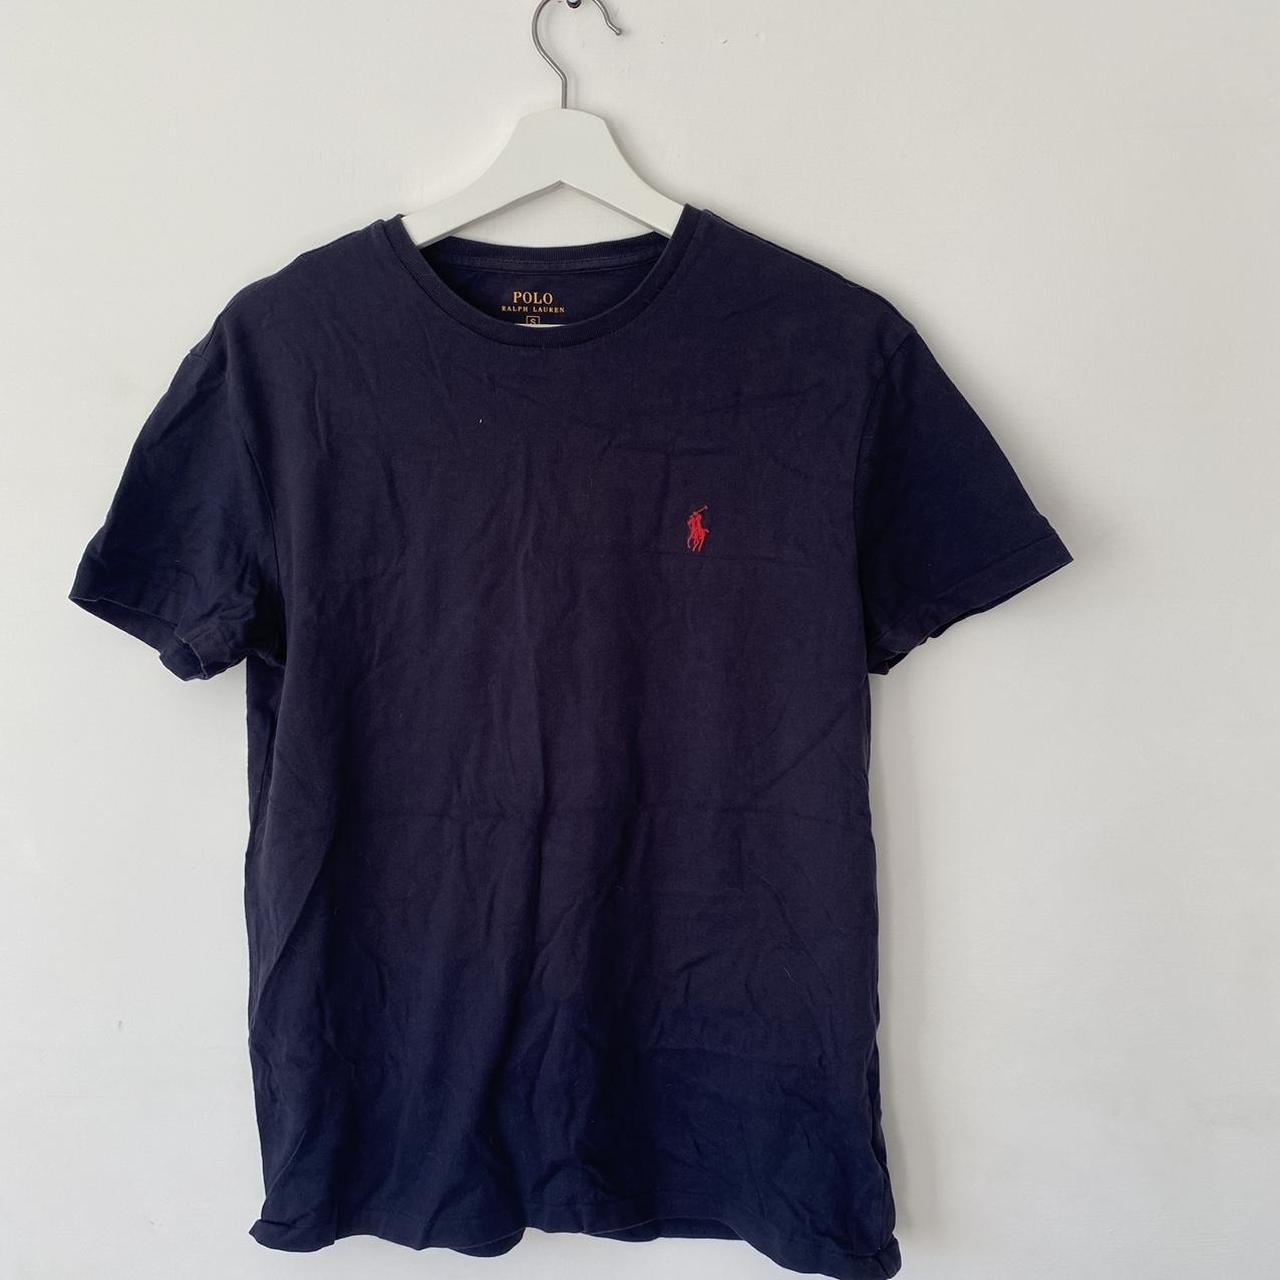 Ralph Lauren T-Shirt navy blue with red logo - Depop